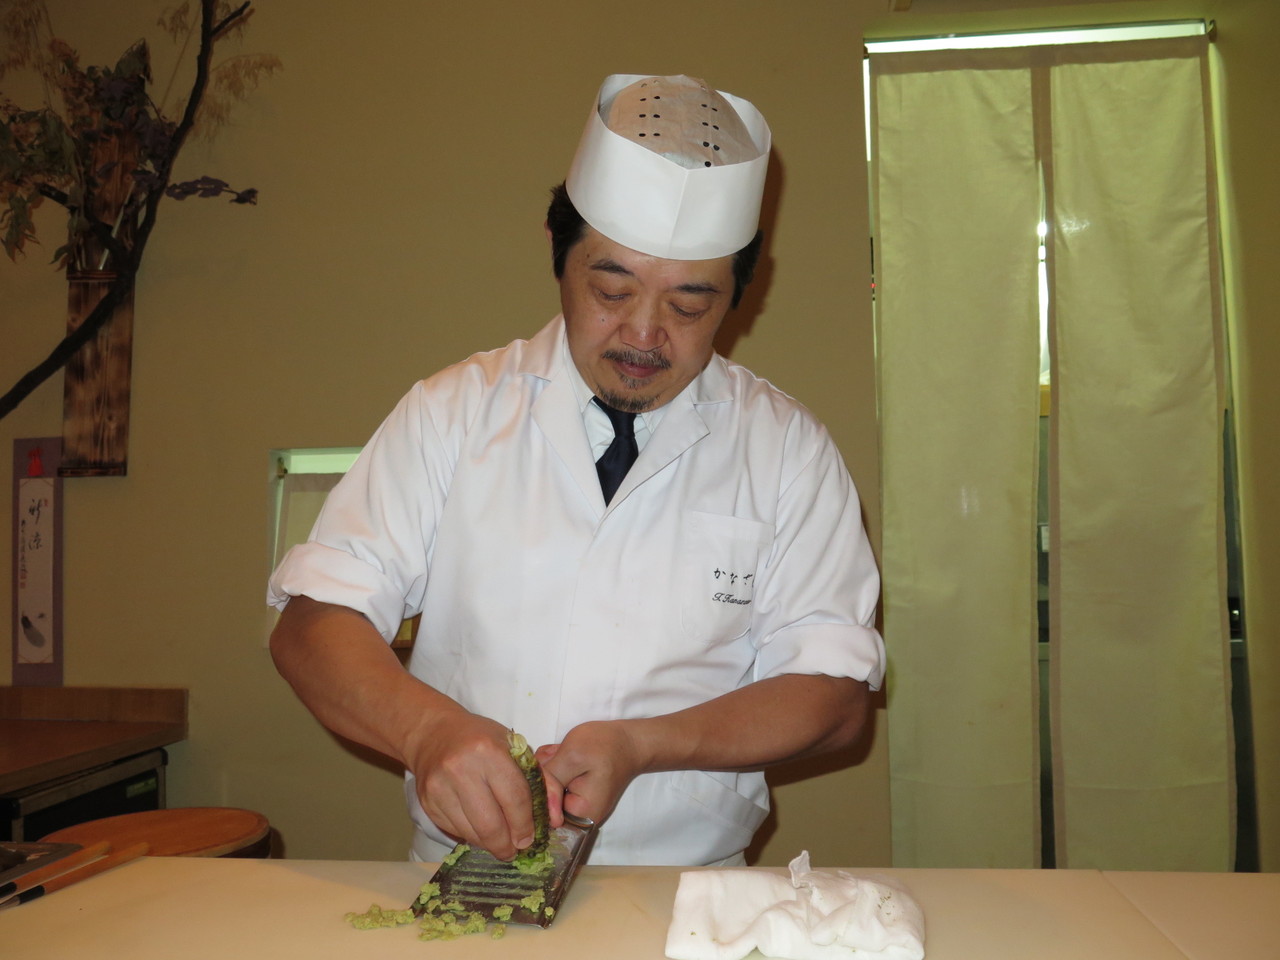 Tomoaki Kanazawa e a raiz da planta Wasabia Japonica